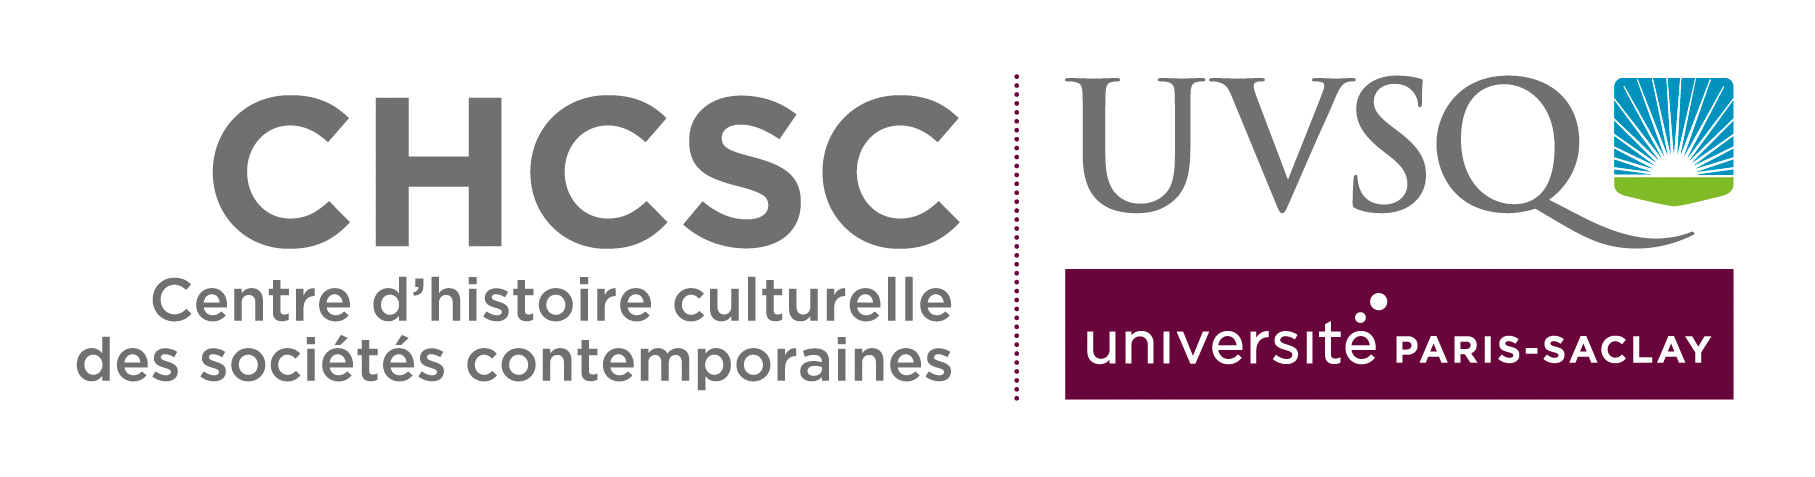 UVSQ | Université Paris-Saclay | Aller à la page d'accueil